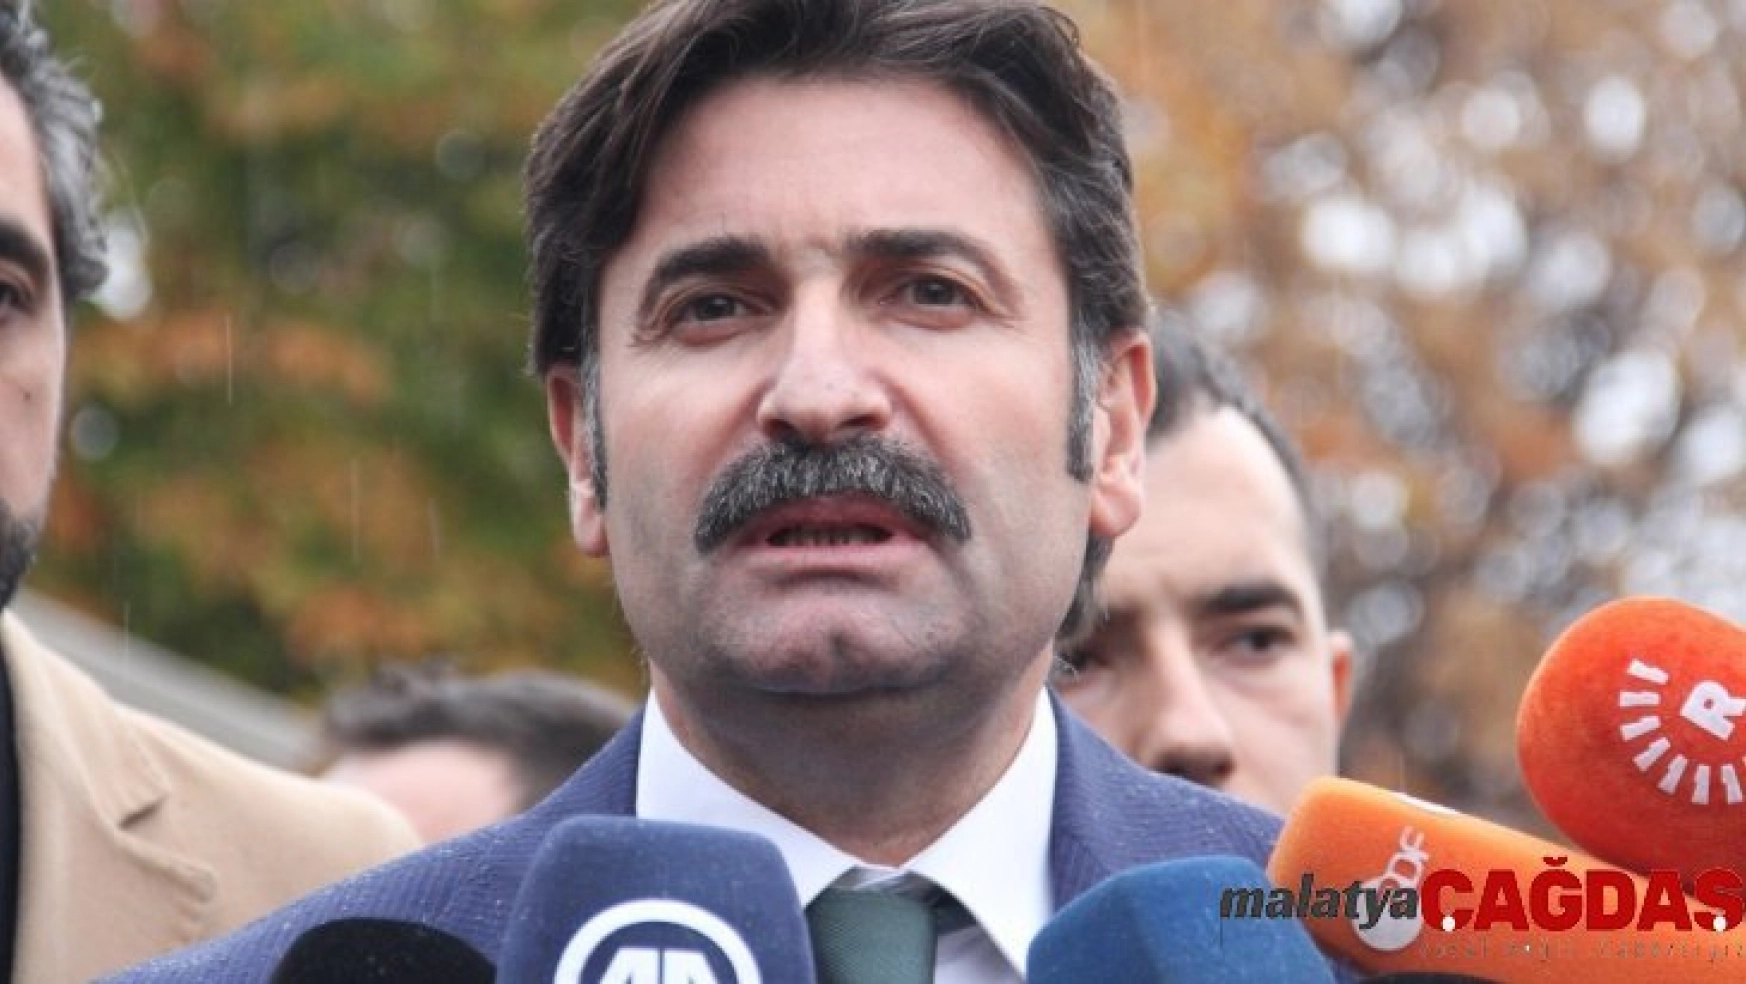 Davutoğlu'nun partisinin kuruluş dilekçesi İçişleri Bakanlığına sunuldu